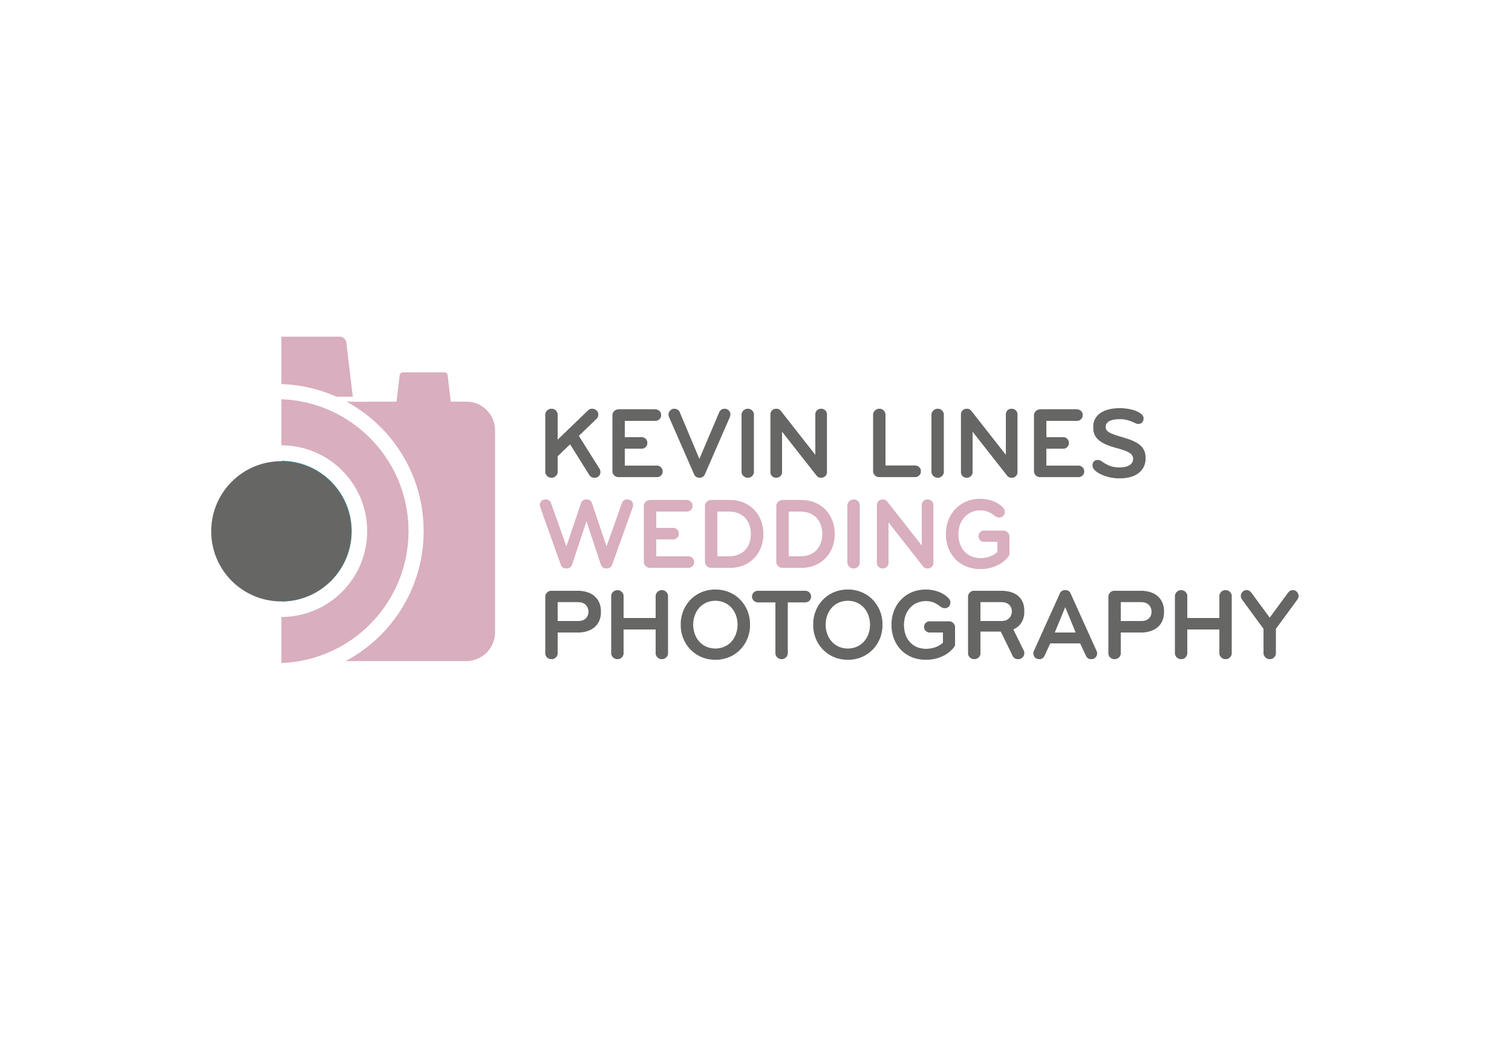 Kevin Lines Weddings